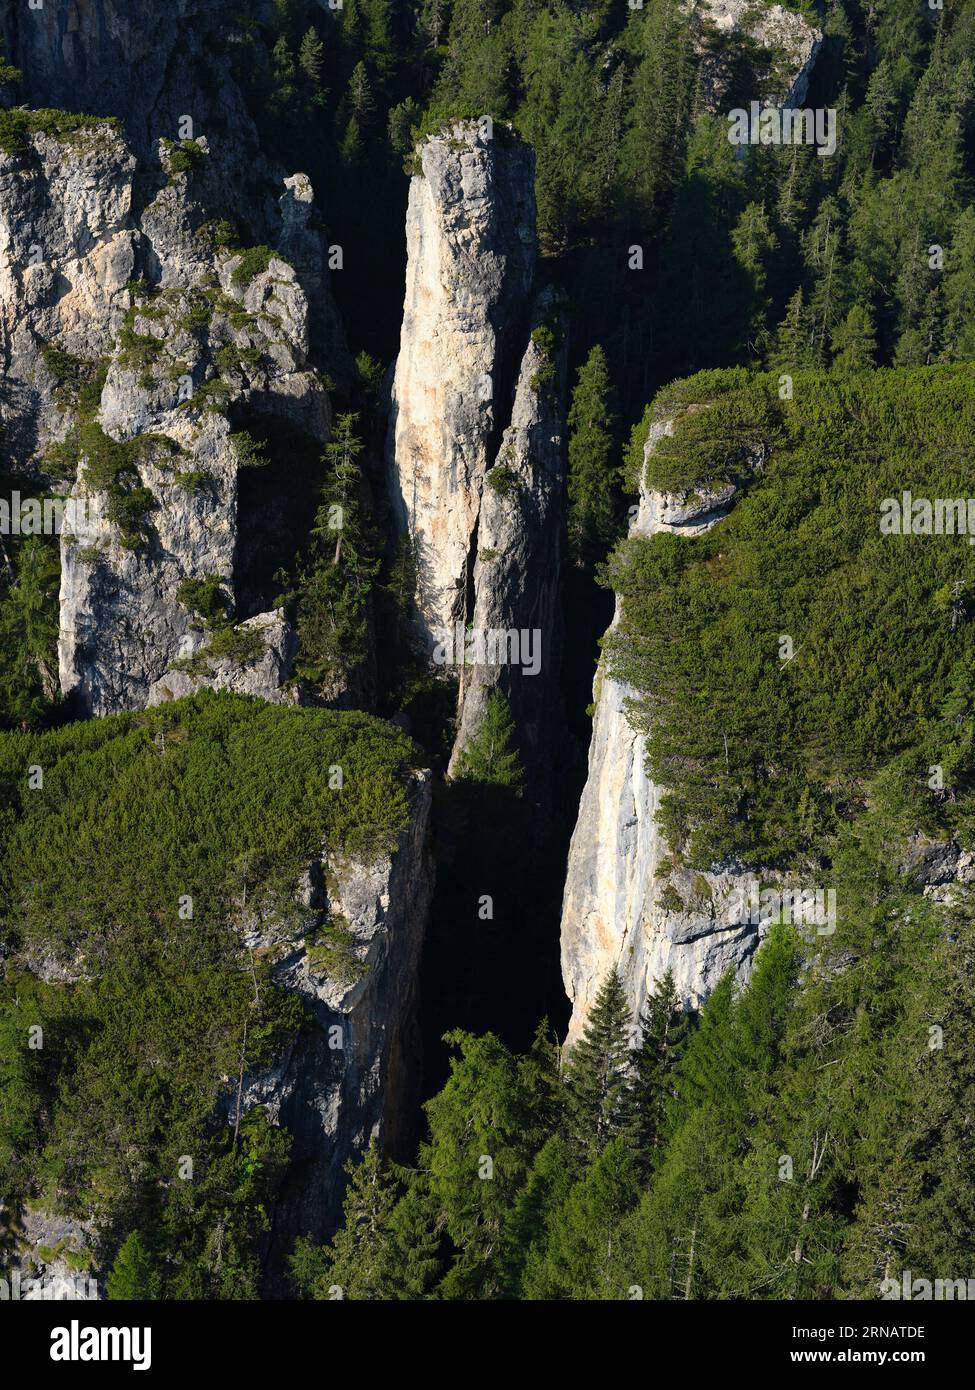 VUE AÉRIENNE. Becco d'Ajal est une curiosité géologique et un endroit bien connu pour l'escalade près de Cortina d'Ampezzo. Province of Belluno, Vénétie, Italie. Banque D'Images